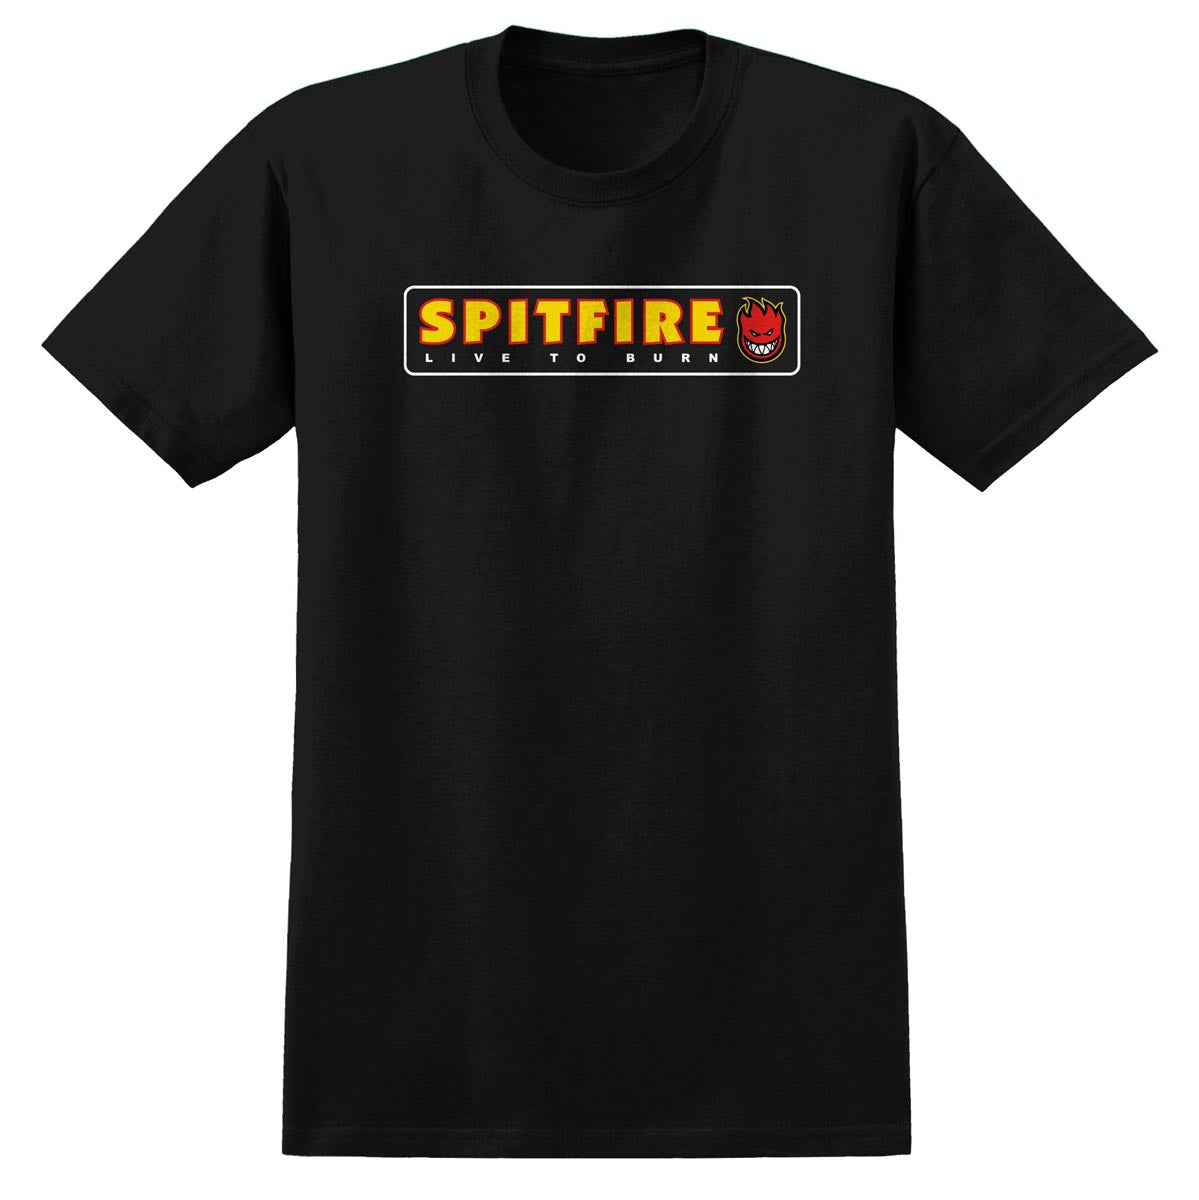 Spitfire LTB T-Shirt - Black image 1